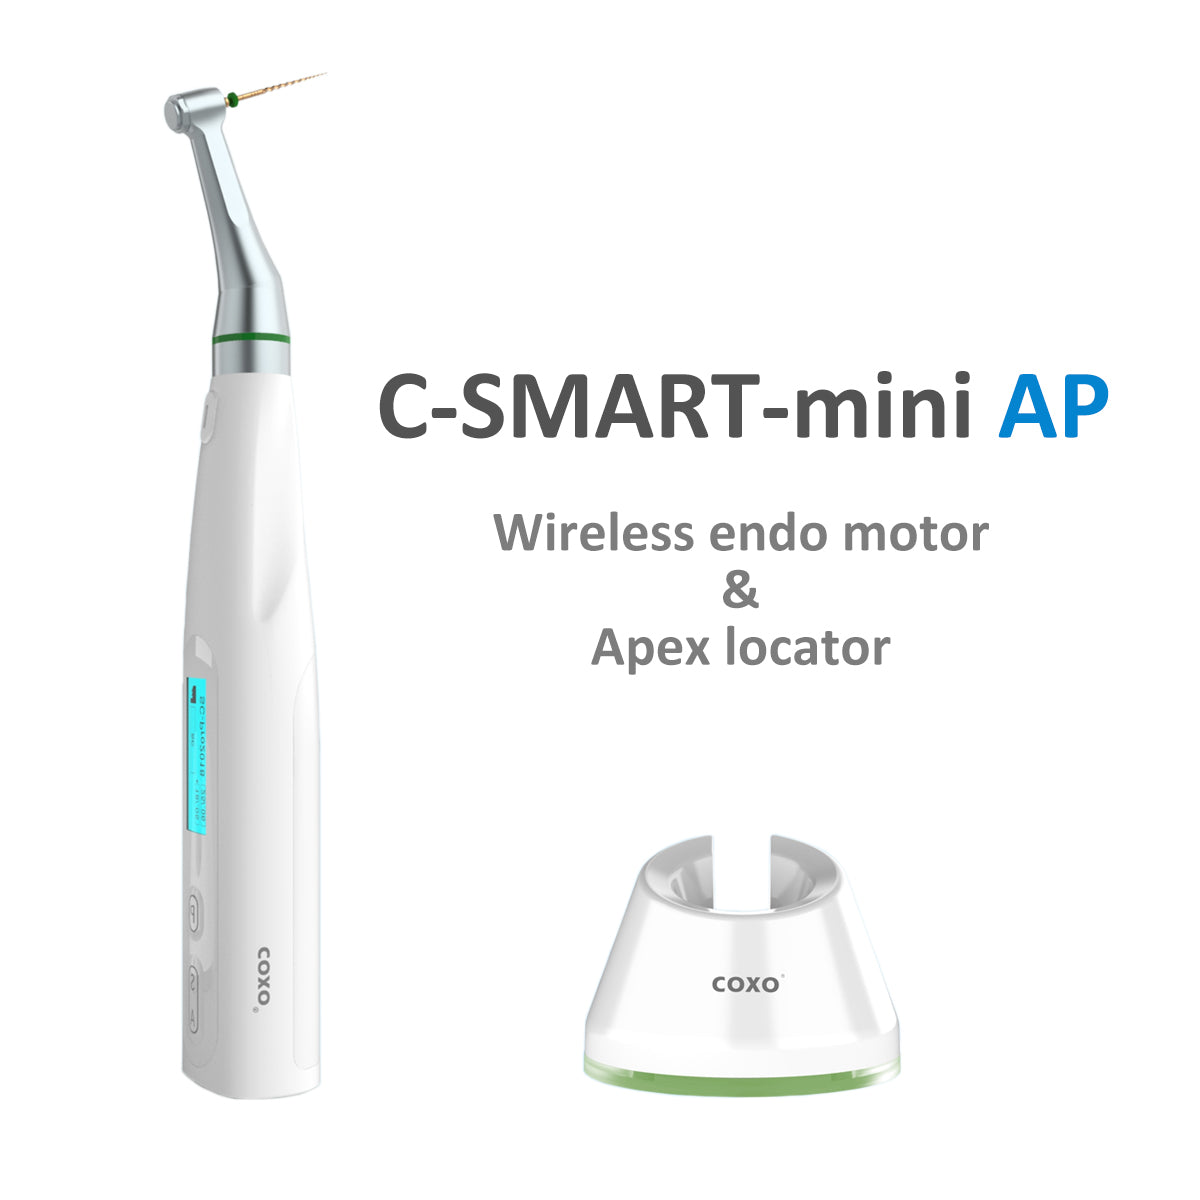 COXO C-smart mini AP Dental Wireless Endo Motor & Apex Locator 2 in 1 , Reciprocation System .